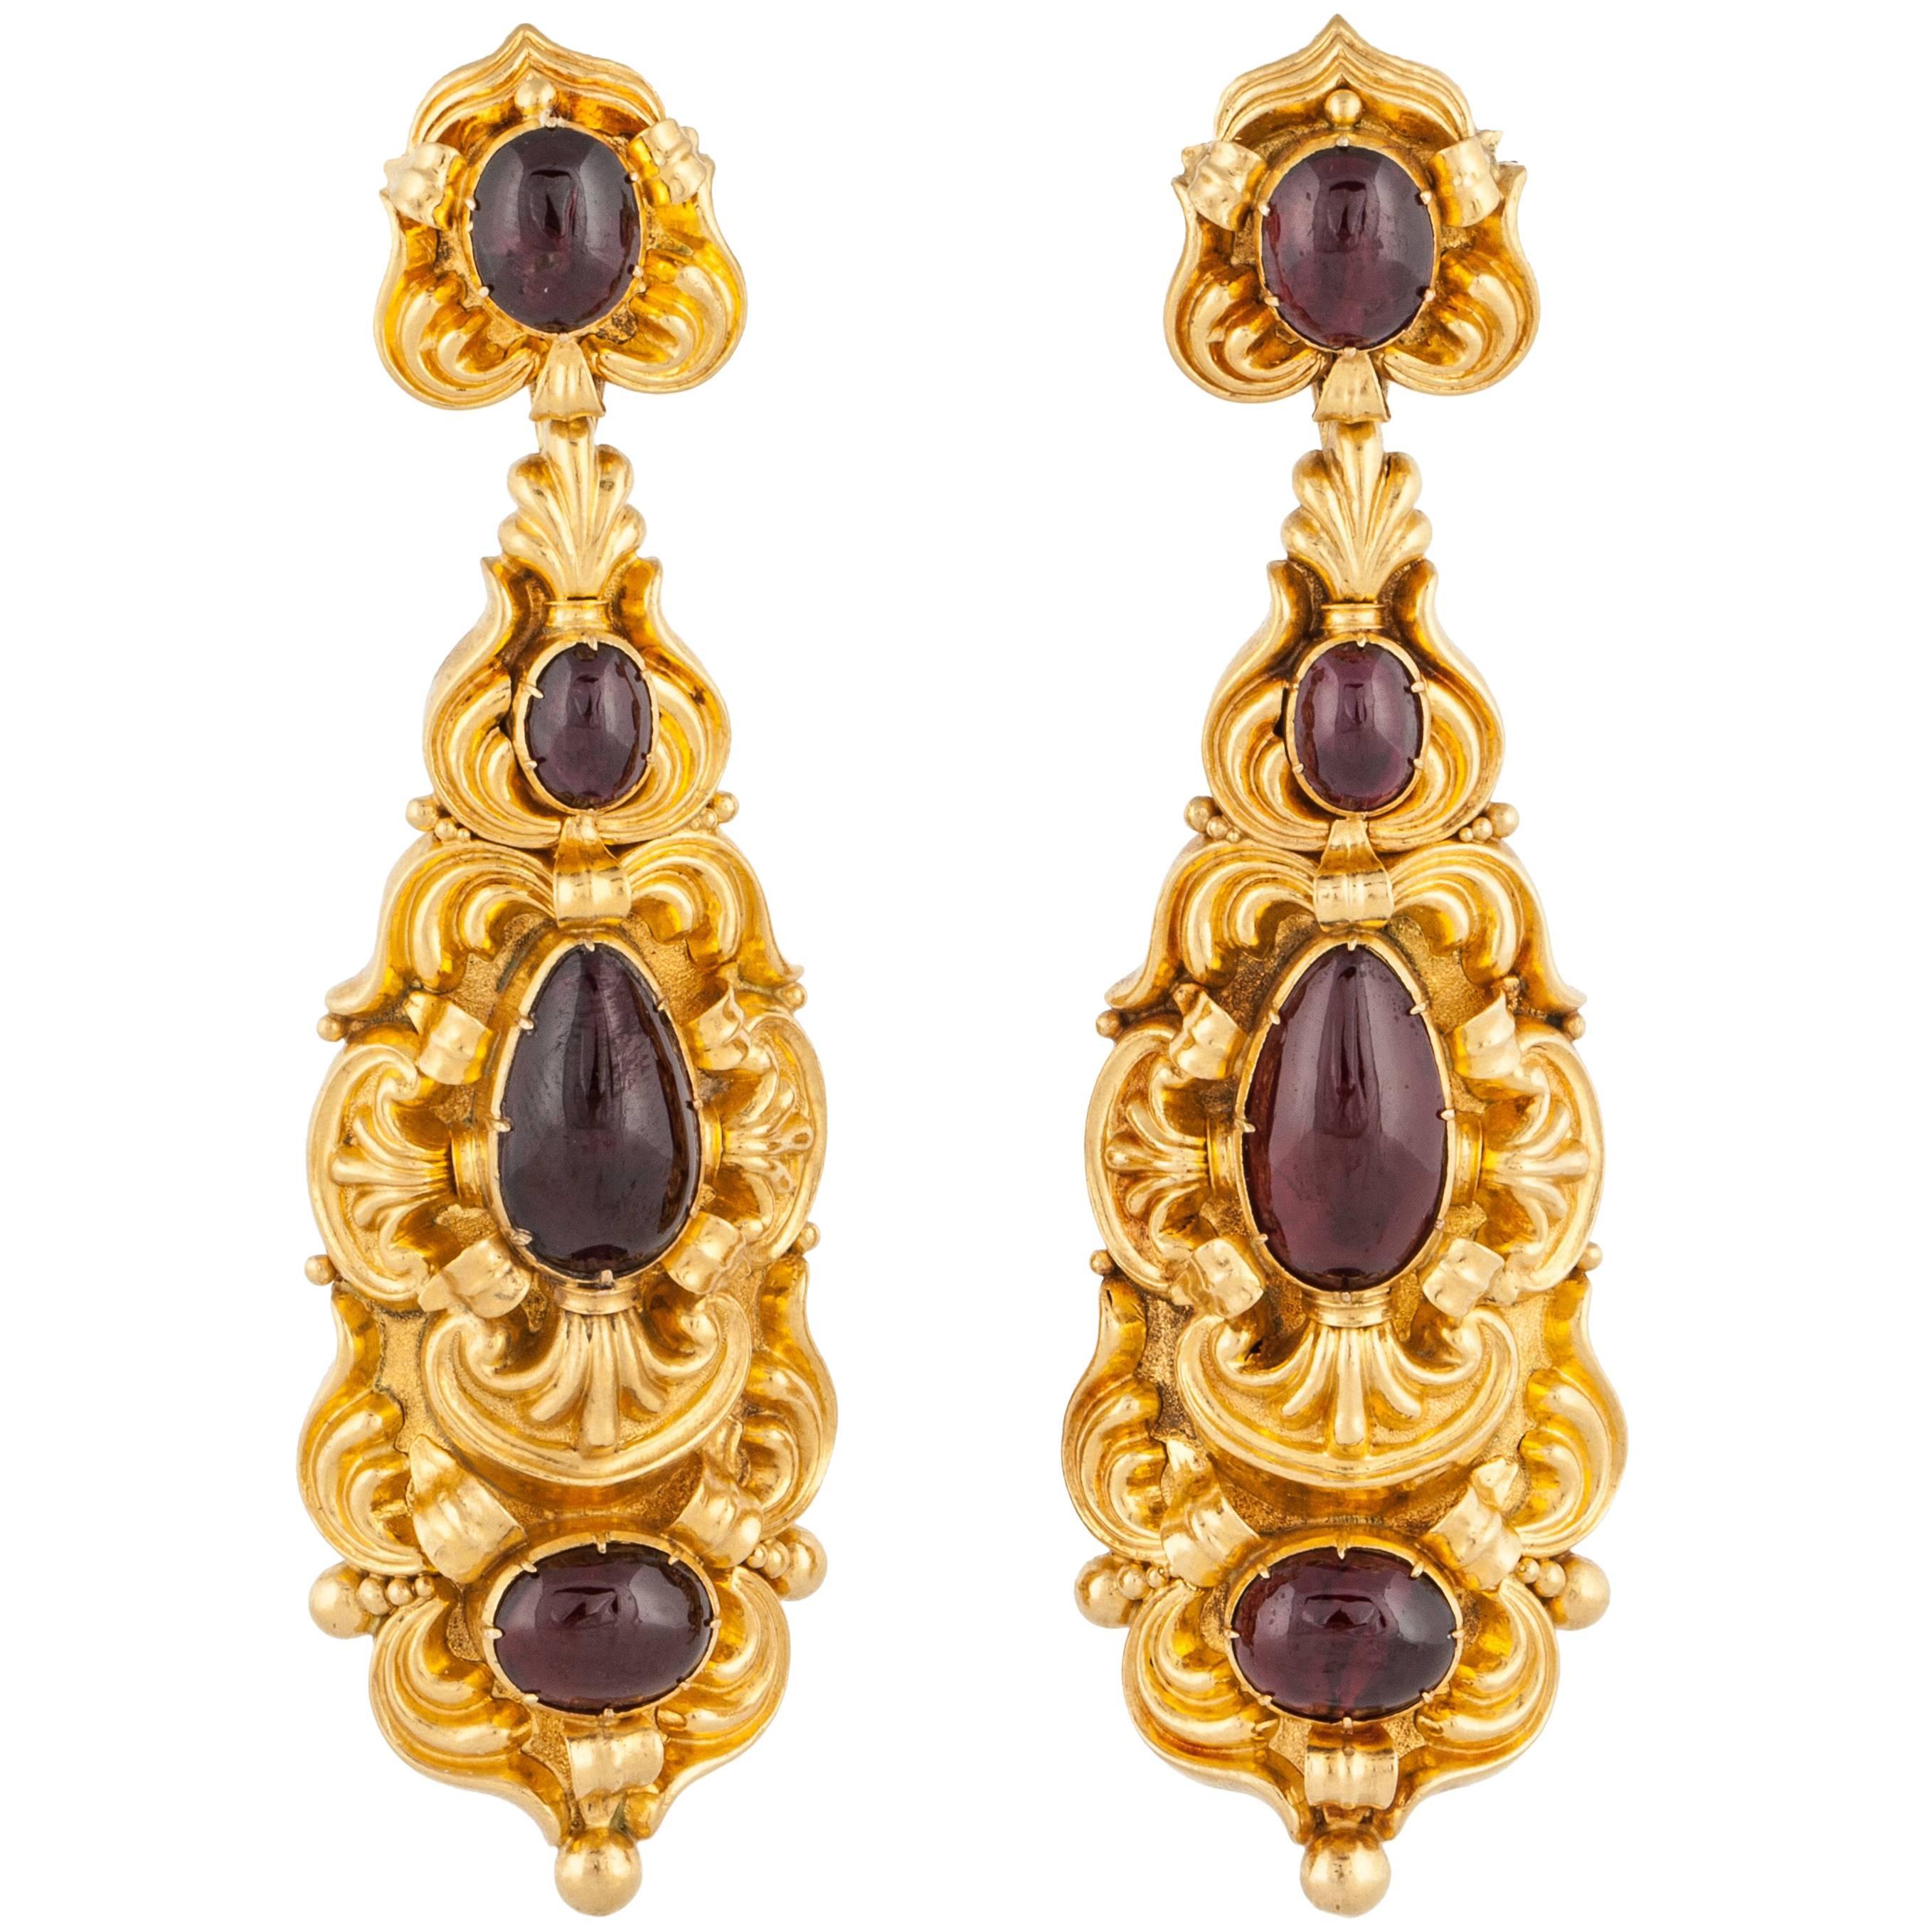 Georgian Garnet Earrings in 18K Gold